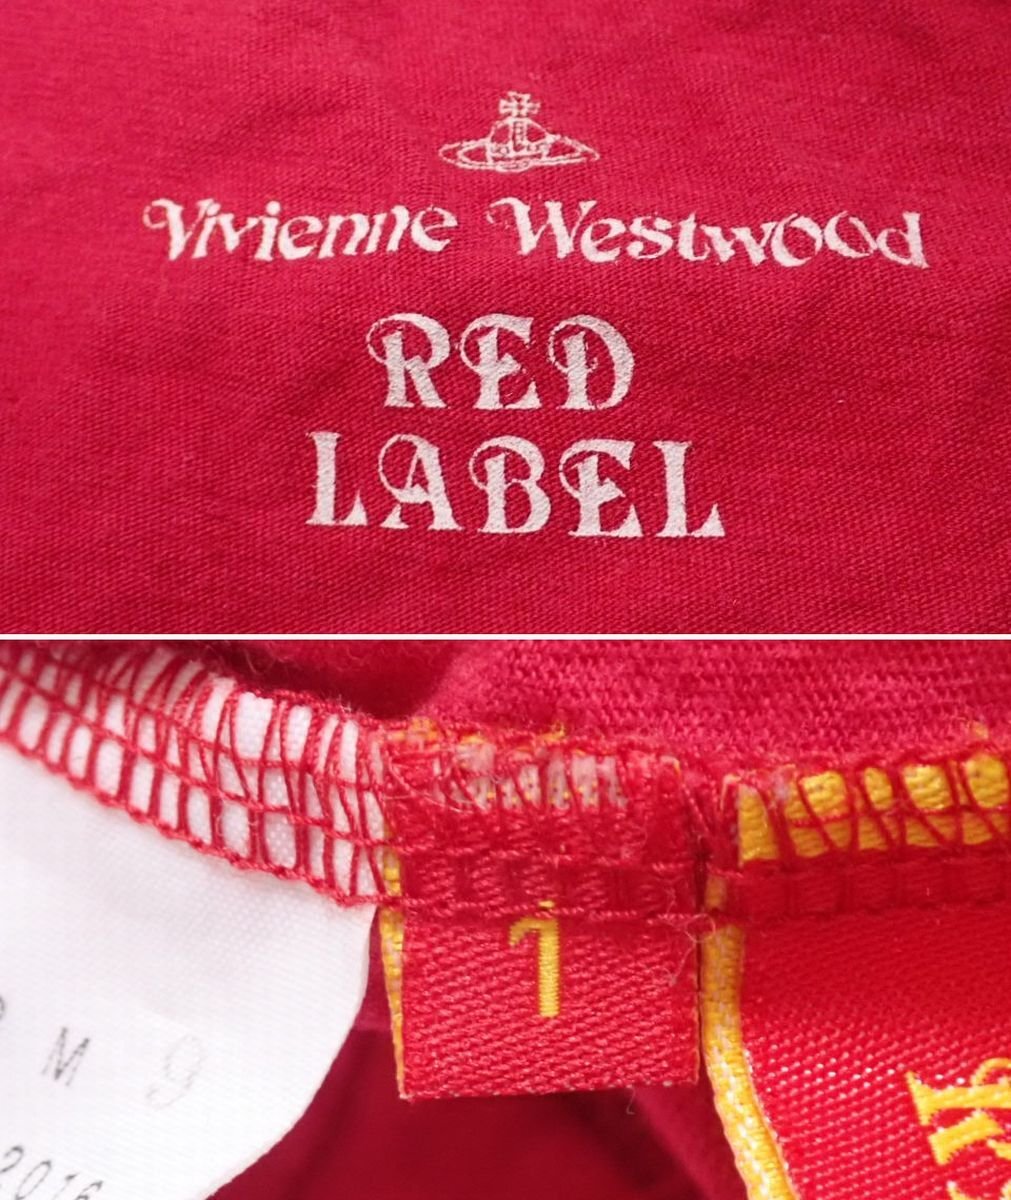 * Vivienne Westwood red label короткий рукав футболка 1/ женский S соответствует / красный /linen. хлопок / овальный шея &1949500186